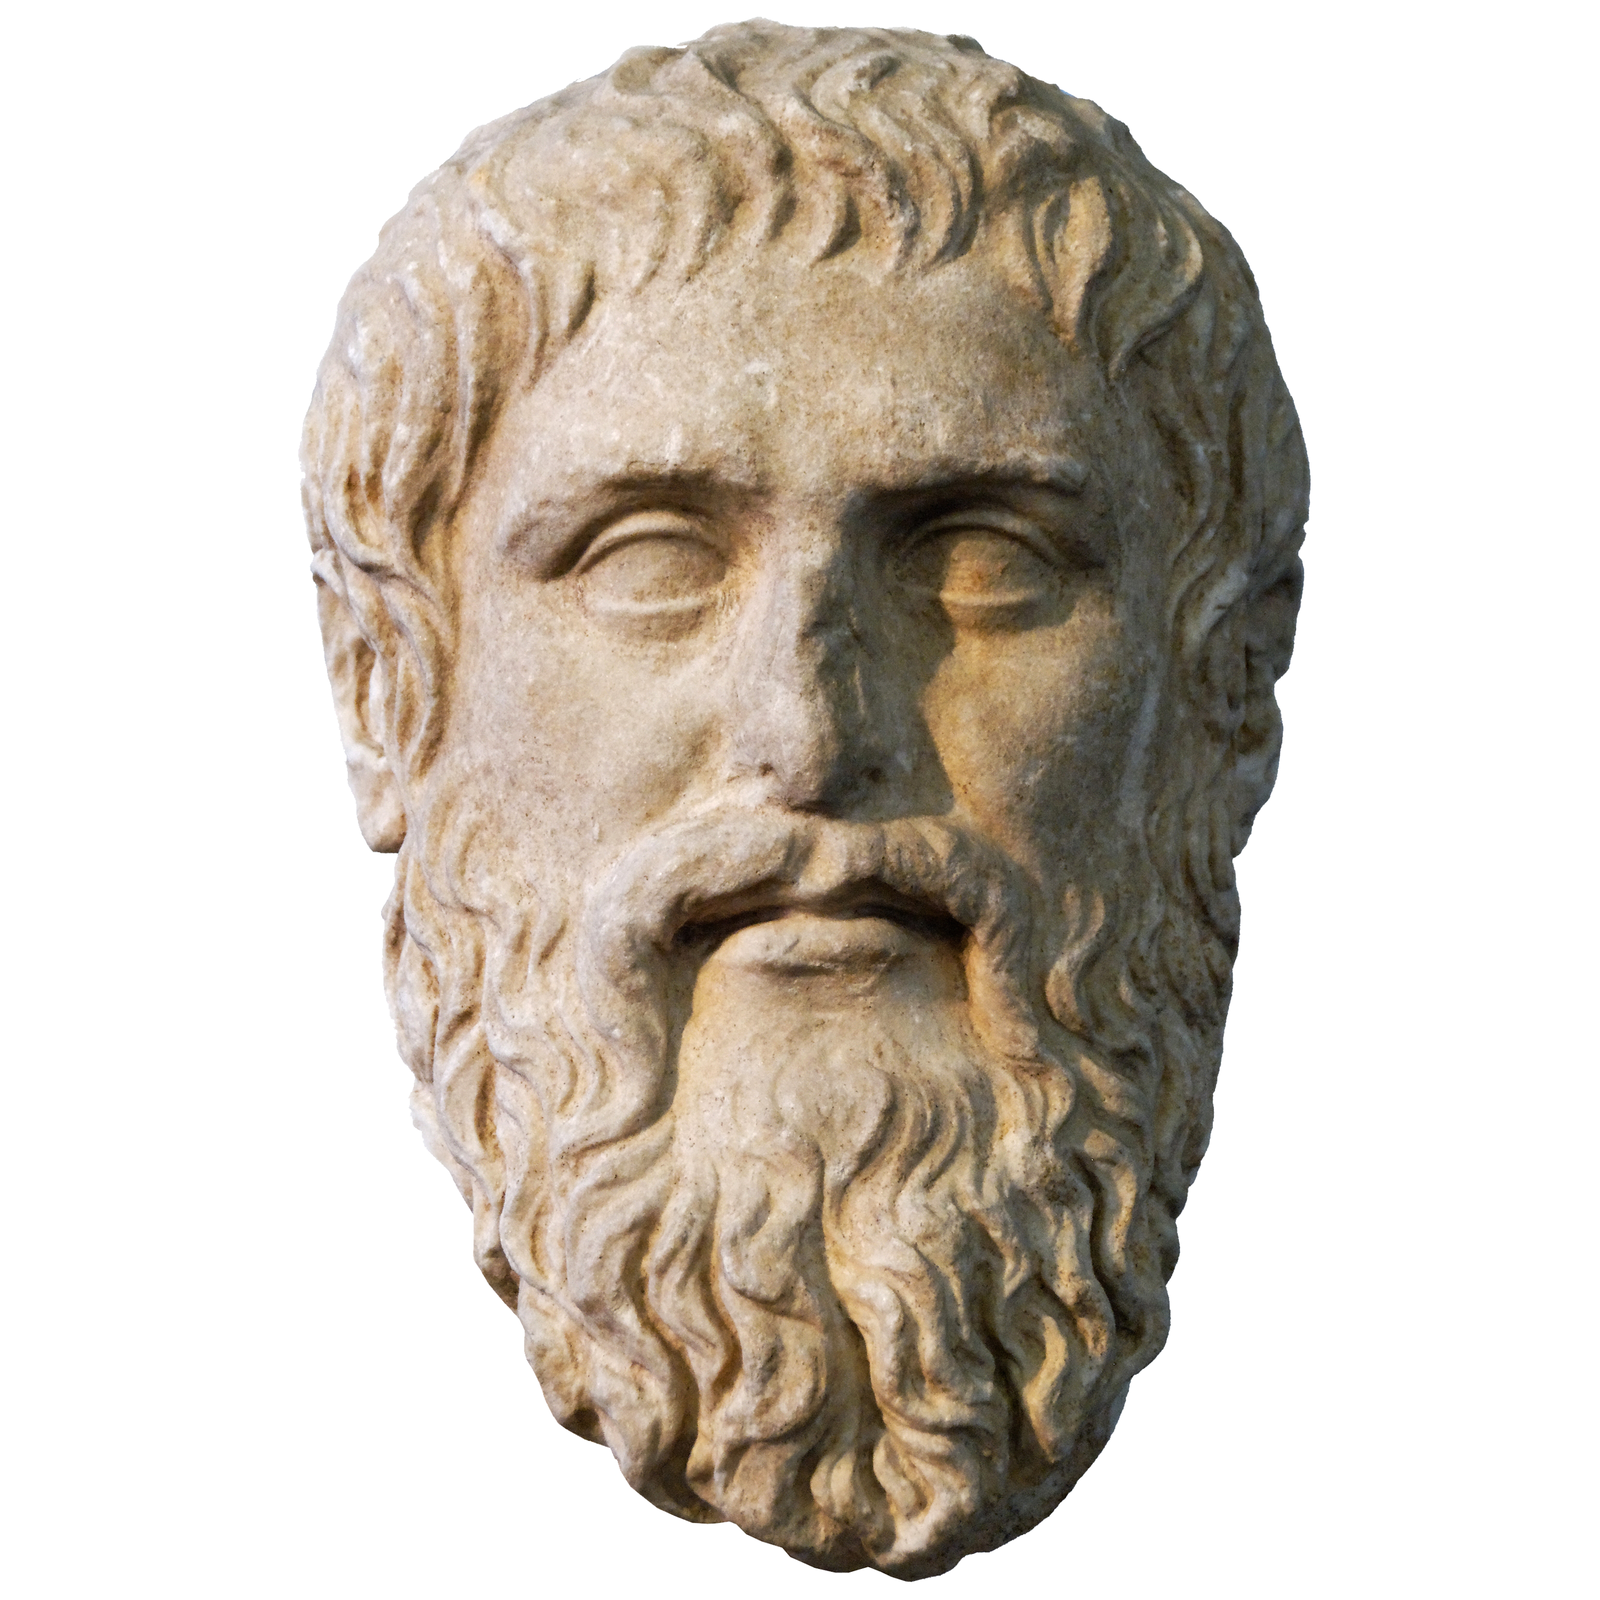 Platon – podobizna przechowywana w Muzeum Kapitolińskim w Rzymie Platon – podobizna przechowywana w Muzeum Kapitolińskim w Rzymie Źródło: Marie-Lan Nguyen, Wikimedia Commons, licencja: CC BY 2.5.